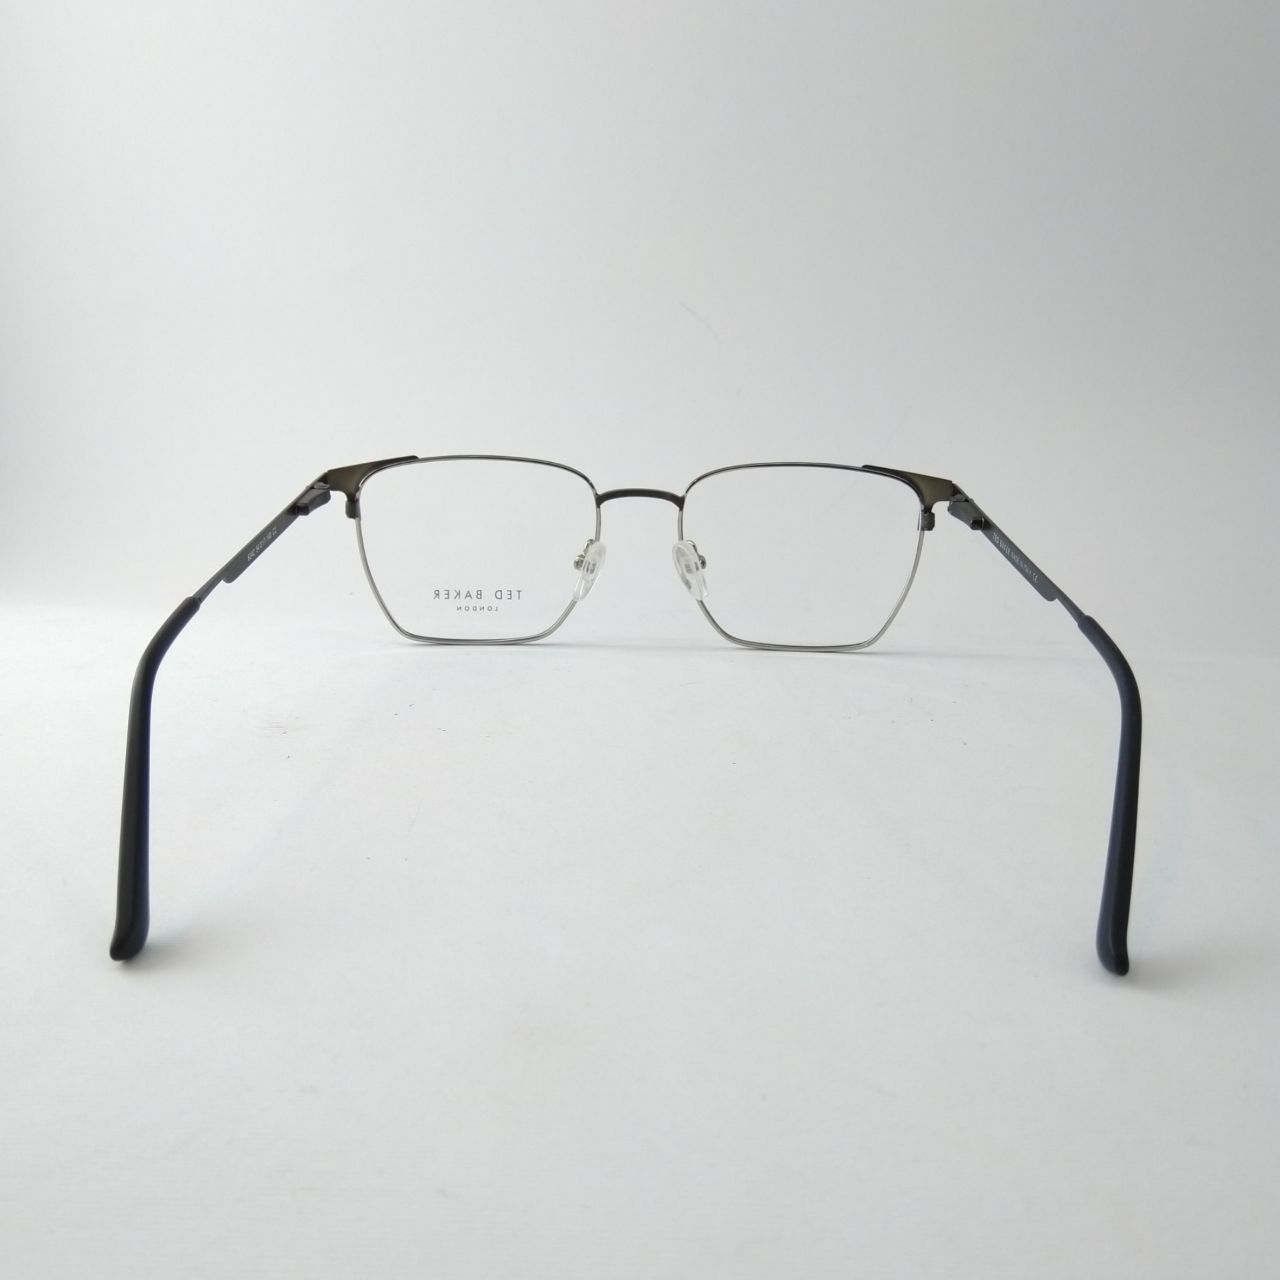 فریم عینک طبی مردانه تد بیکر مدل 8242 -  - 6